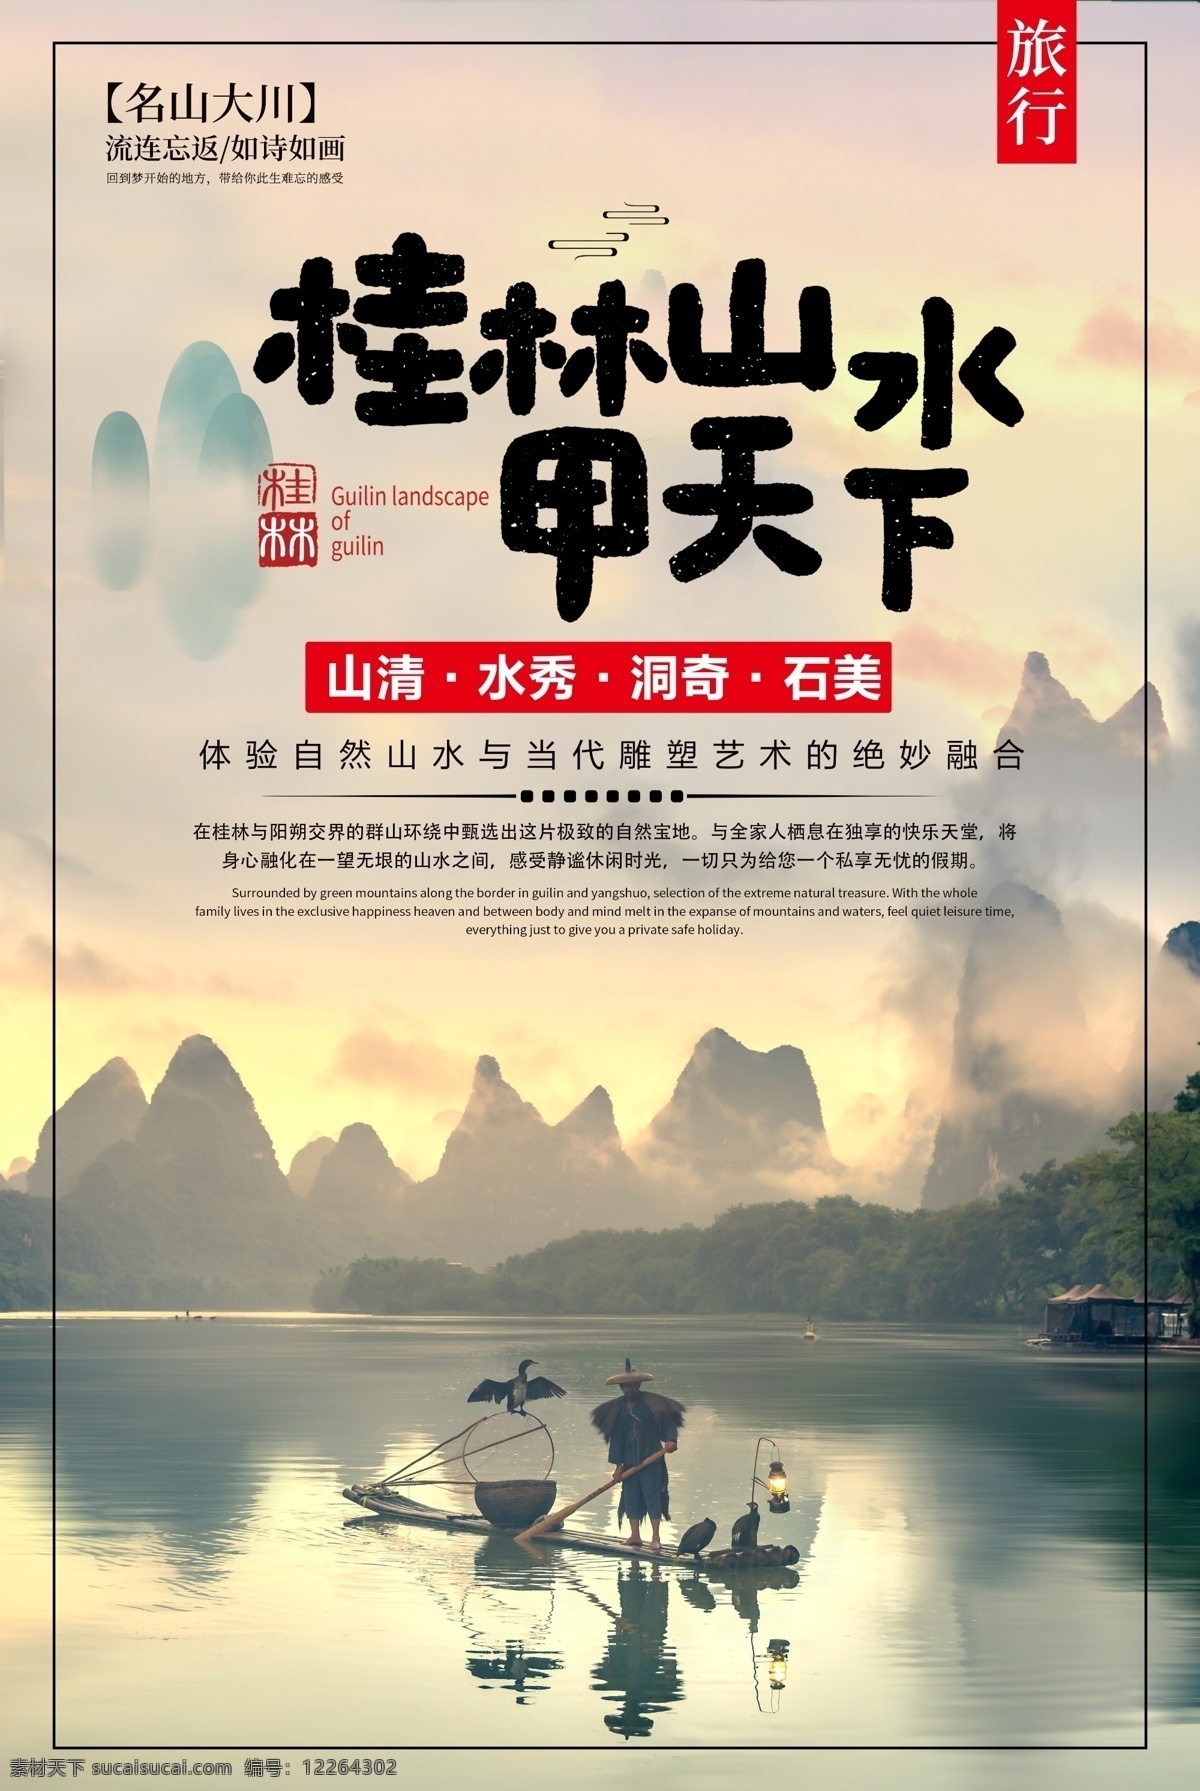 桂林 山水 旅游景点 景区 活动 海报 桂林山水 旅游 景点